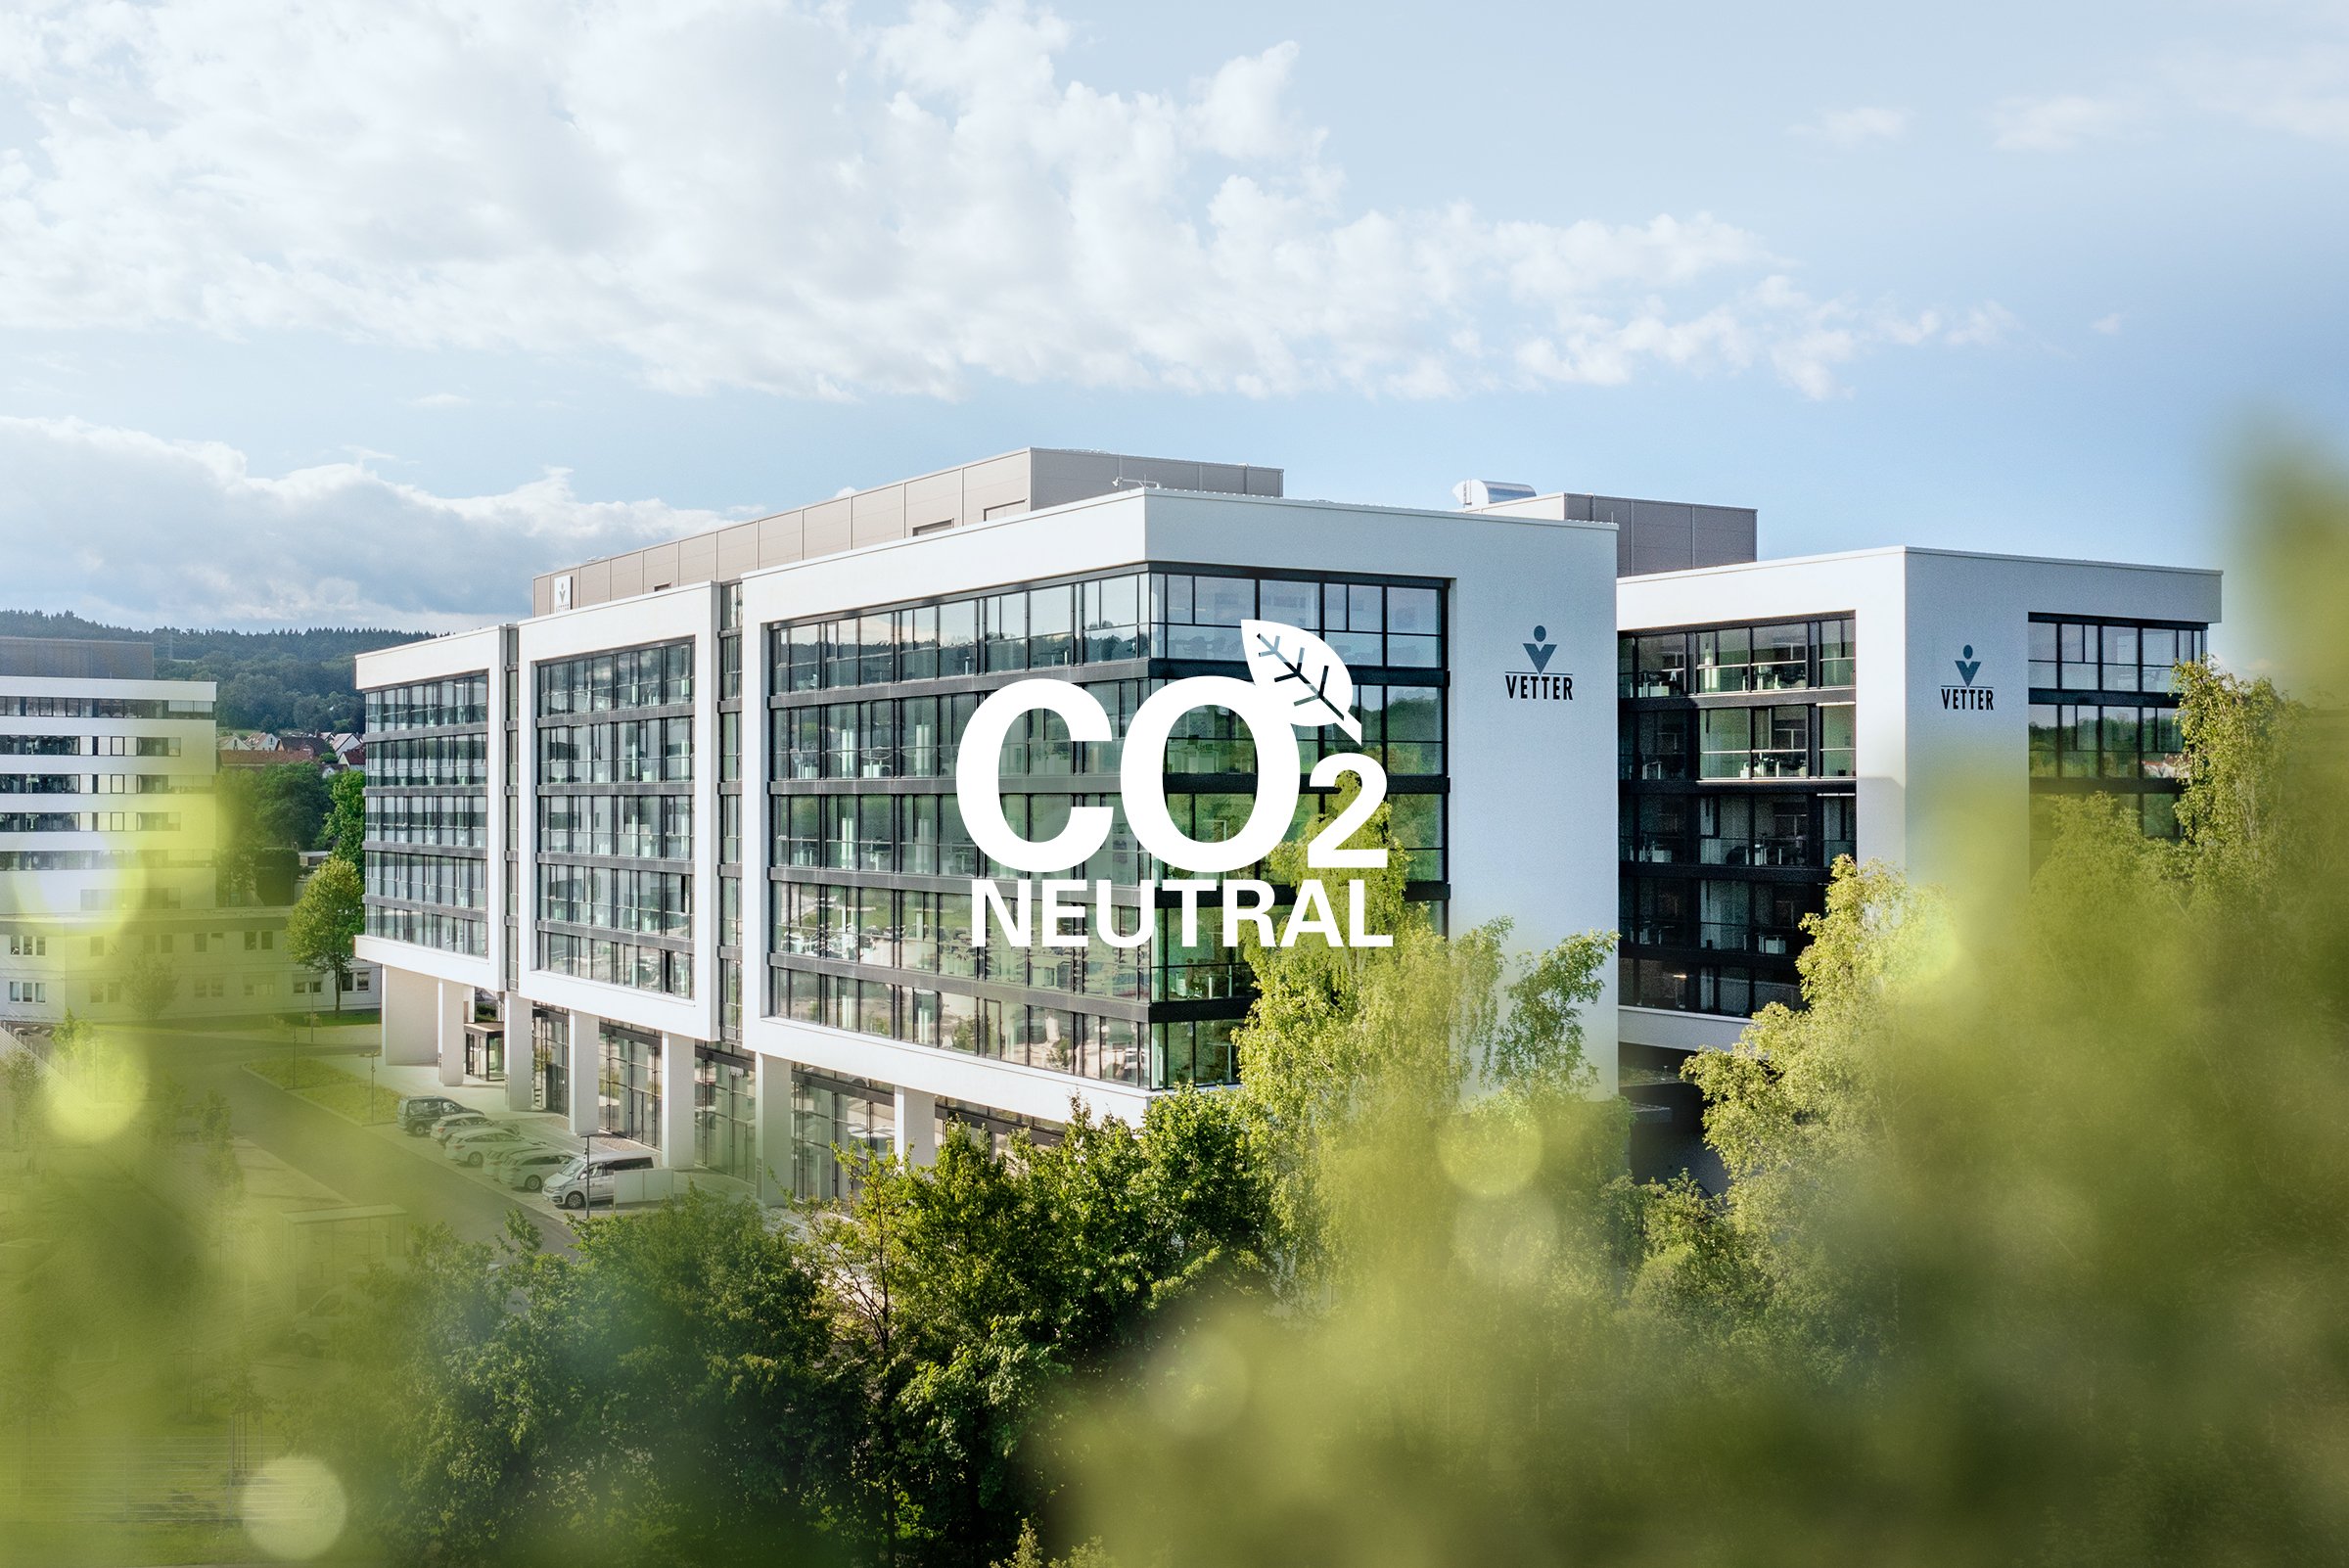 Headquarter Gebäude mit CO2 neutral Schriftzug